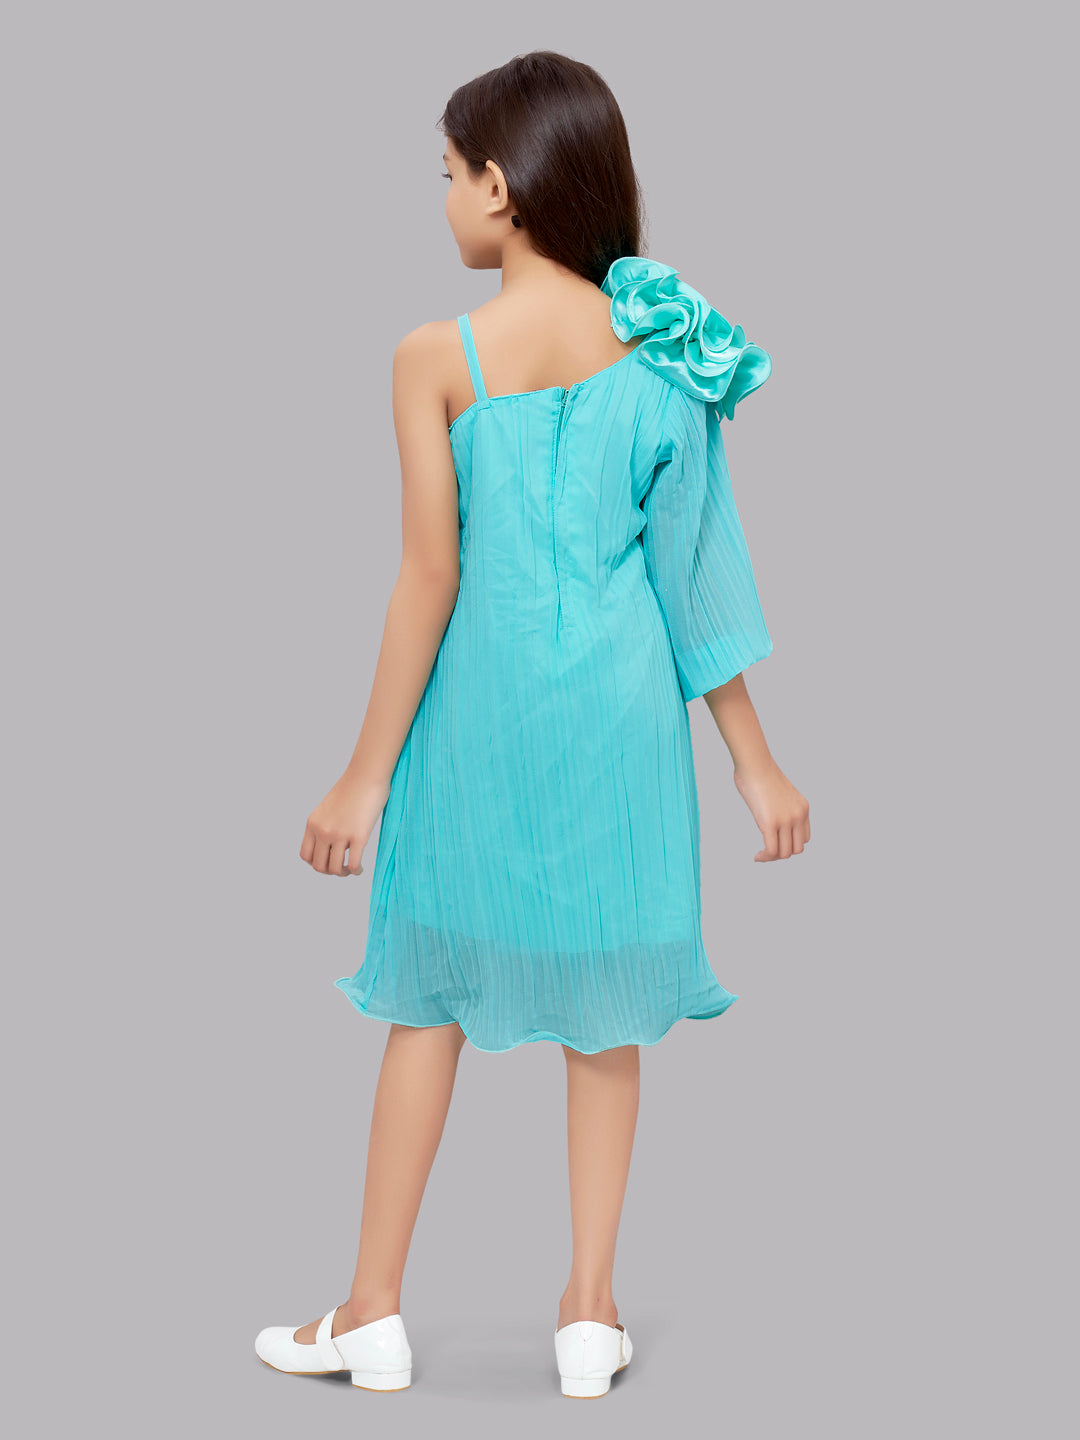 Aqua blue off-shoulder gown by Kalki Fashion